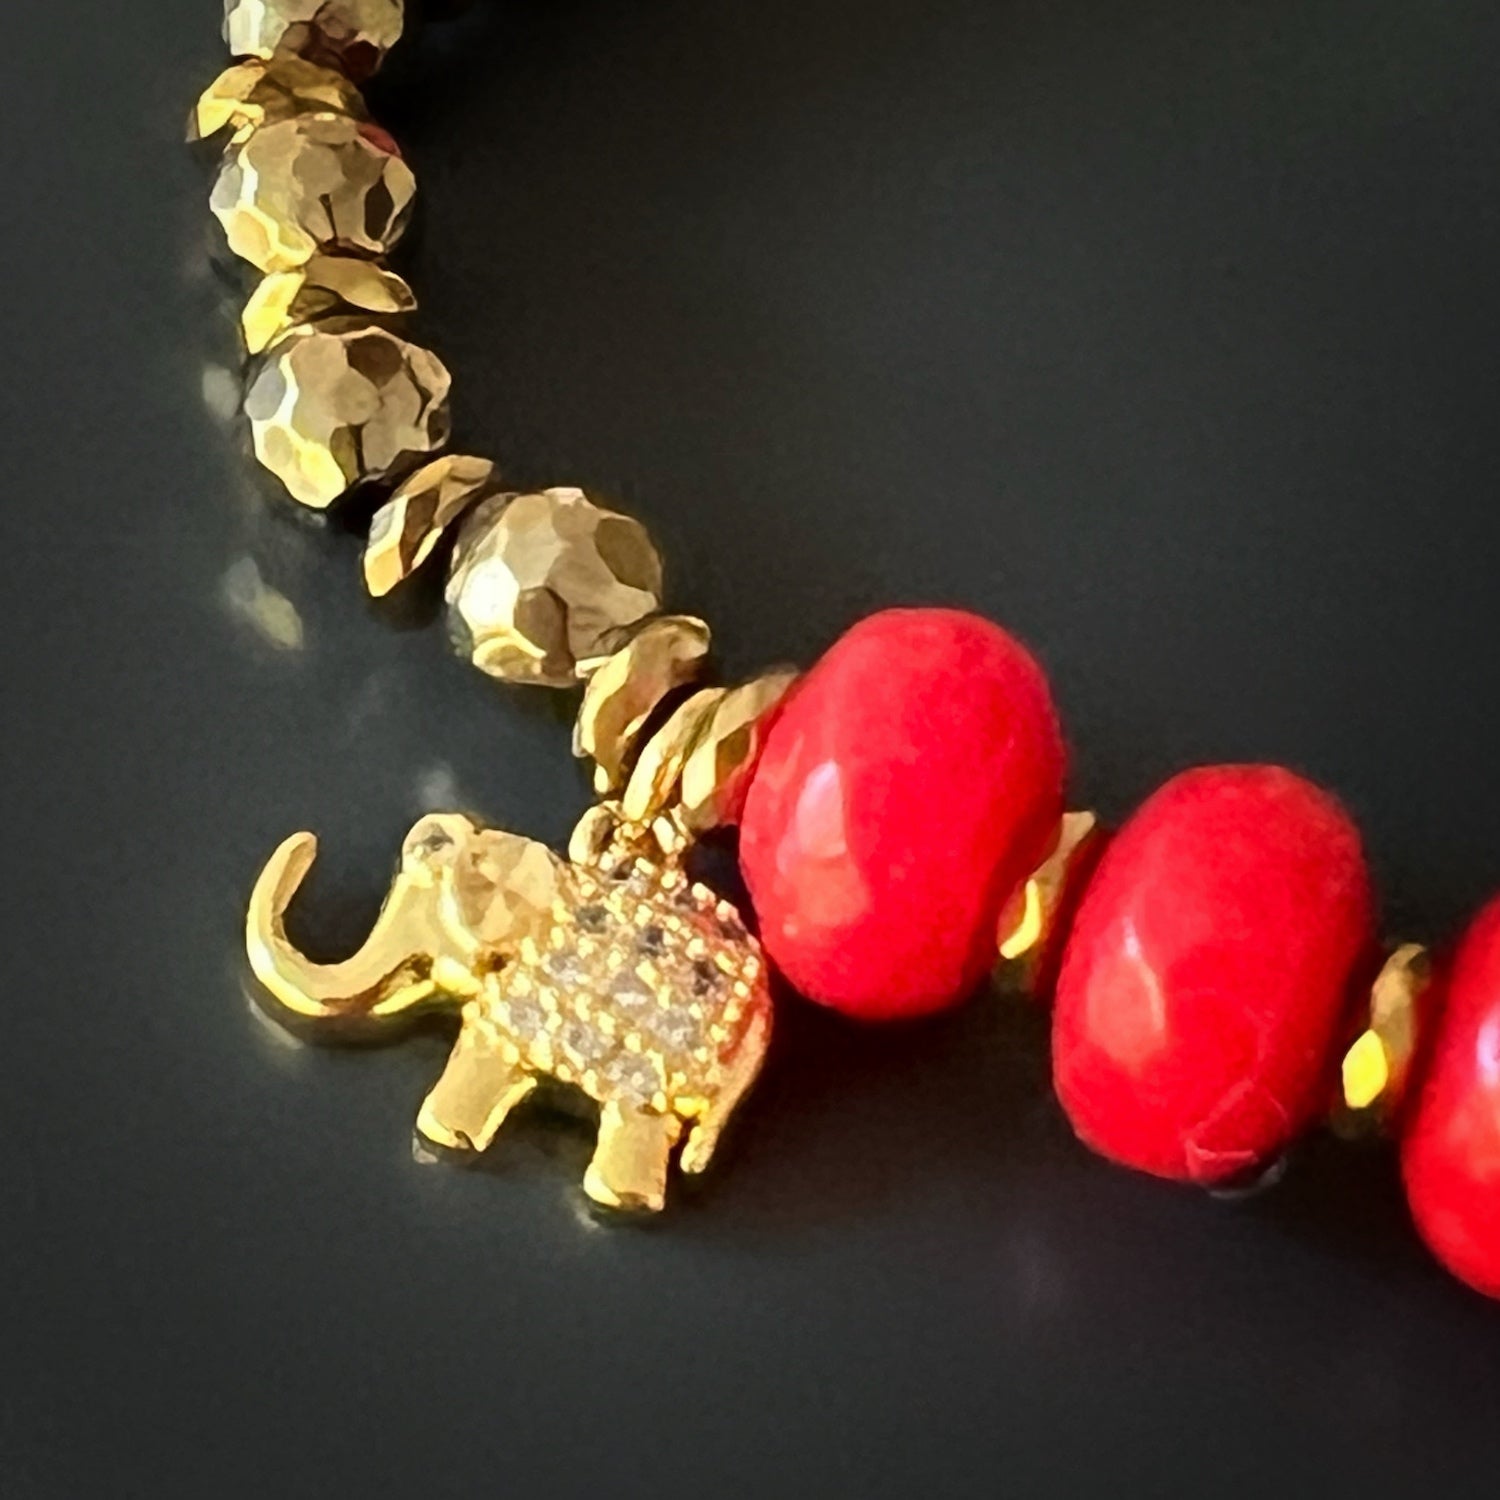 Dainty Red String Multi-Color Beaded Elephant Charm Bracelet, Good Luck Bracelet, Spiritual Strength Bracelet